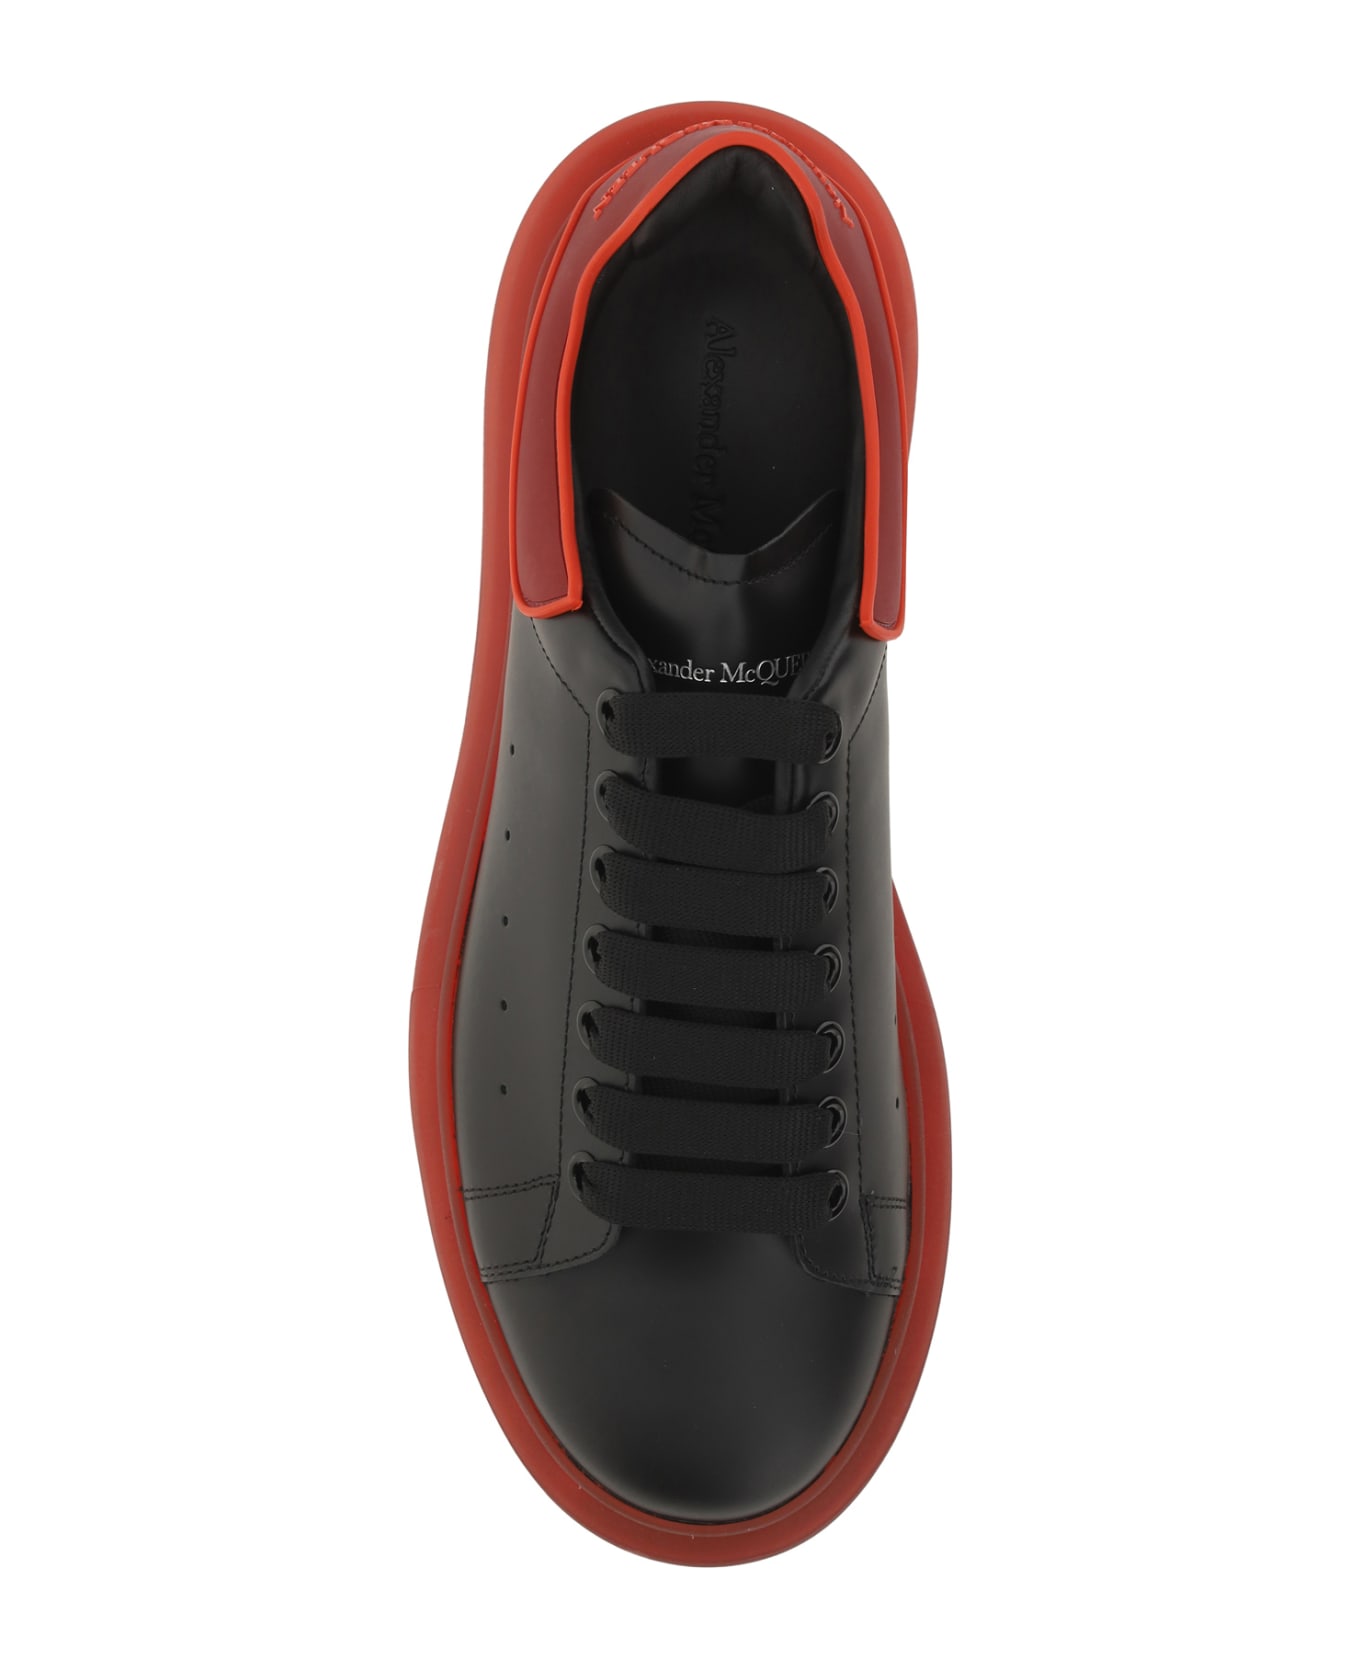 Alexander McQueen Sneakers - Black/multired